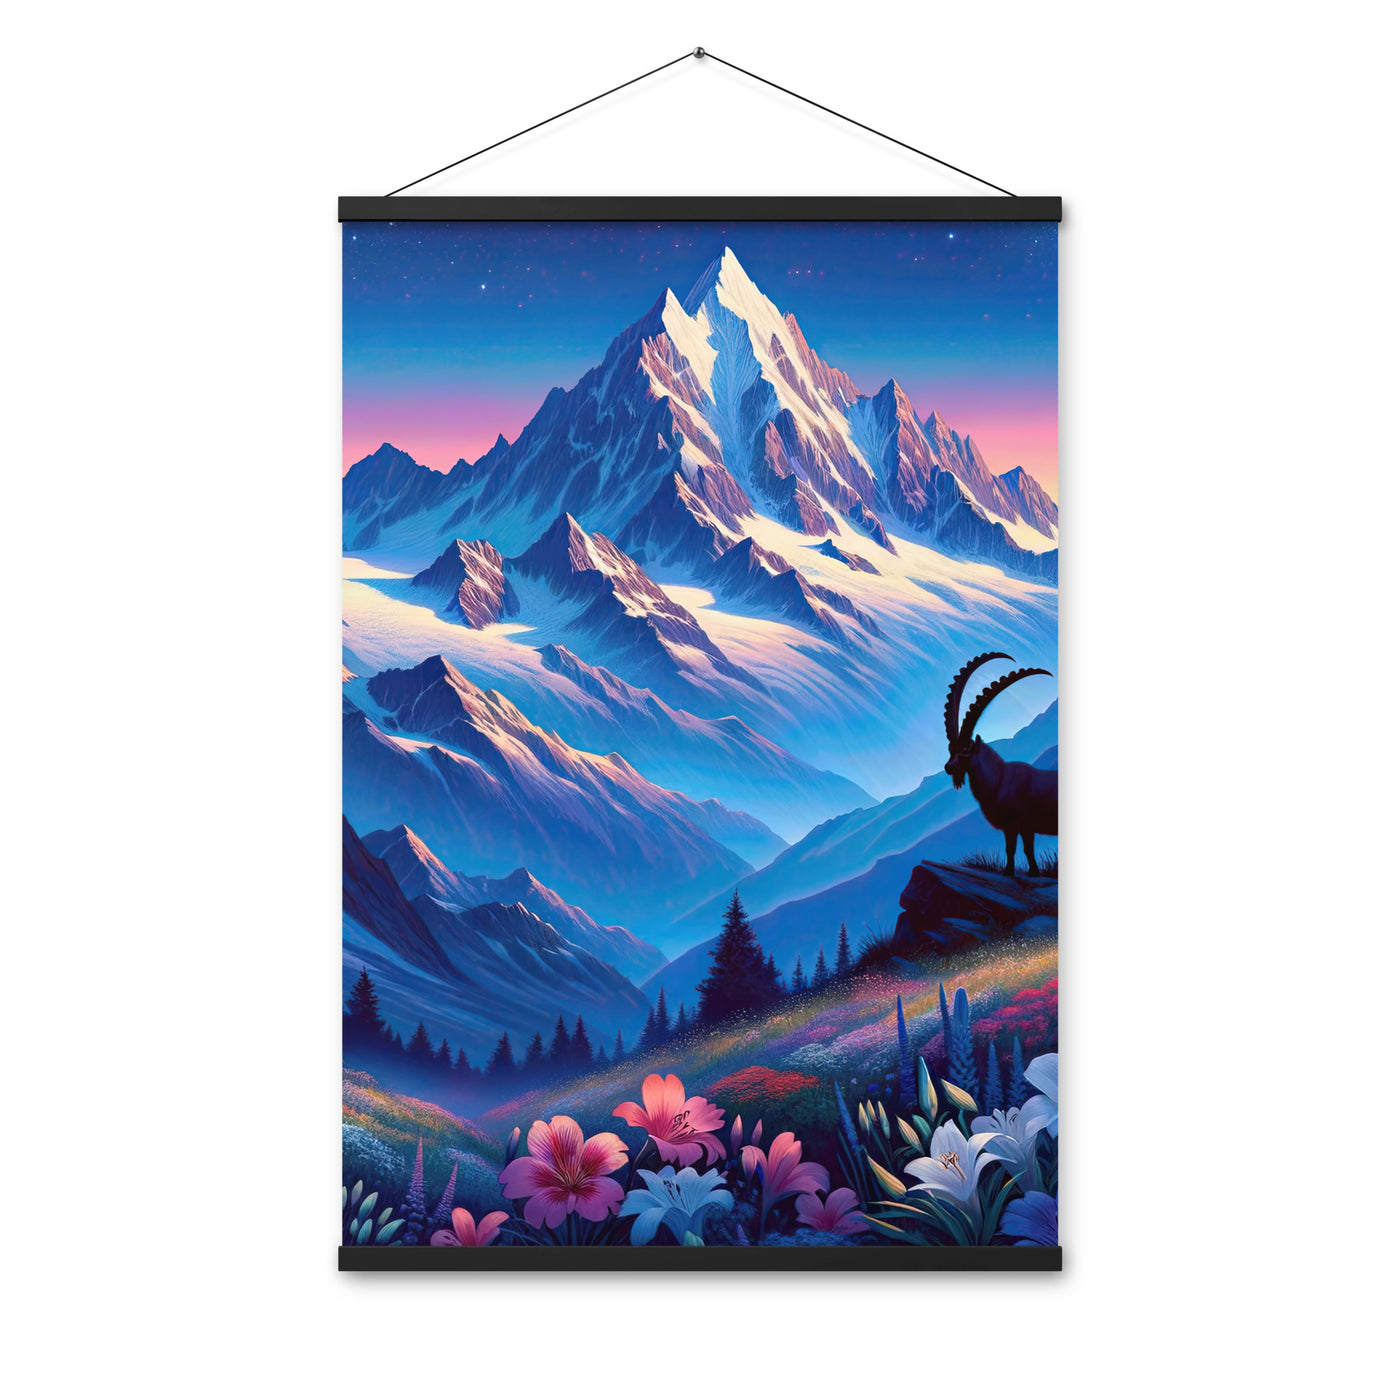 Steinbock bei Dämmerung in den Alpen, sonnengeküsste Schneegipfel - Premium Poster mit Aufhängung berge xxx yyy zzz 61 x 91.4 cm